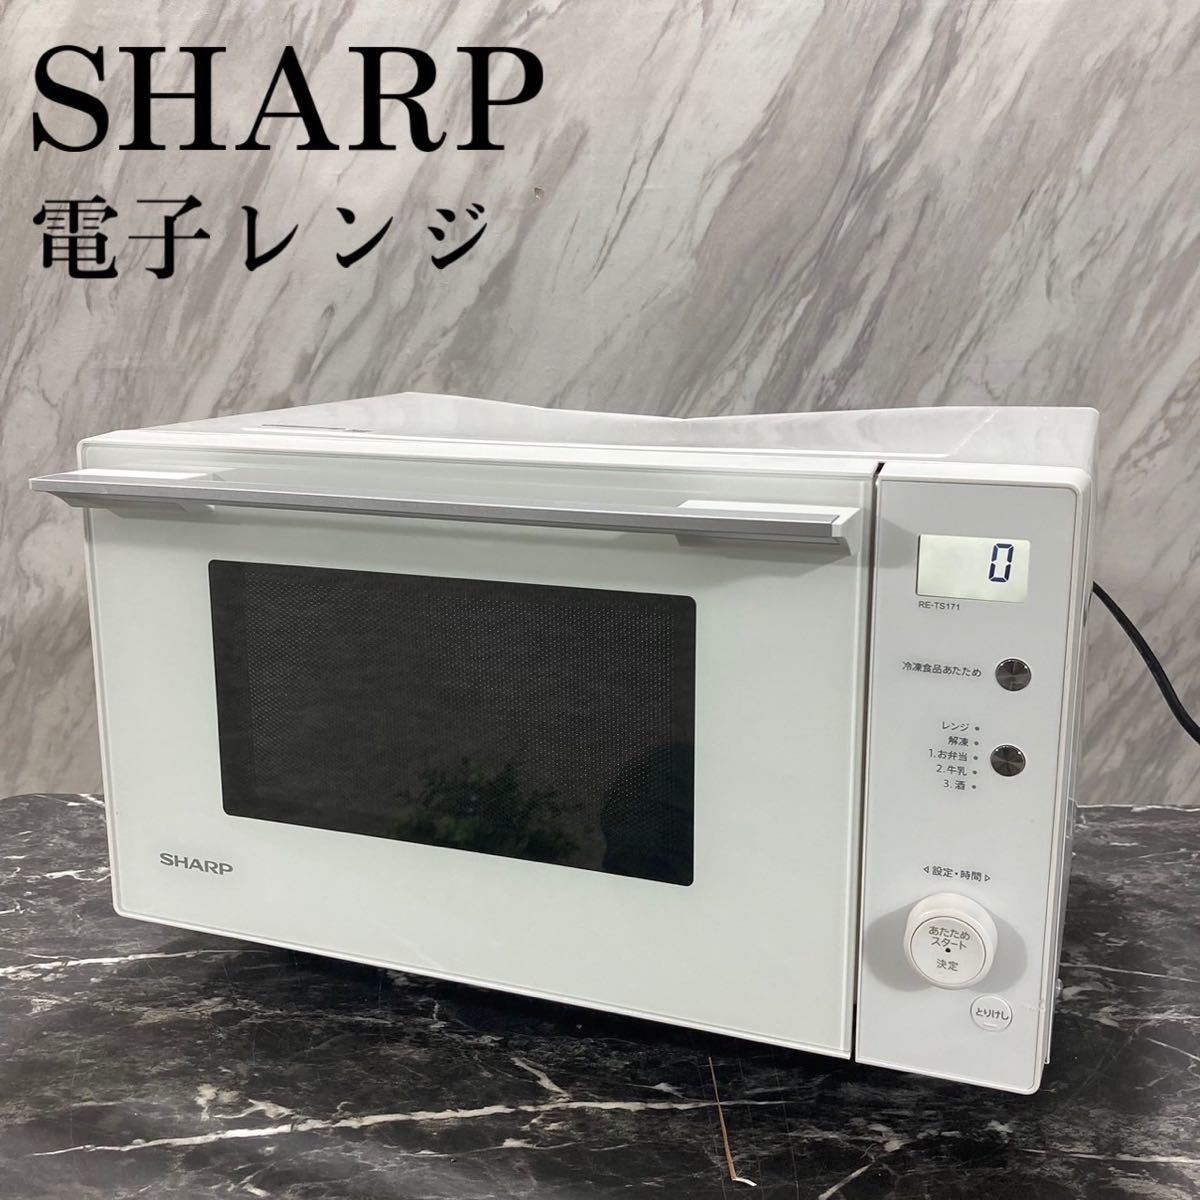 SHARP 電子レンジ PLAINLY RE-TS171-W 17L K560